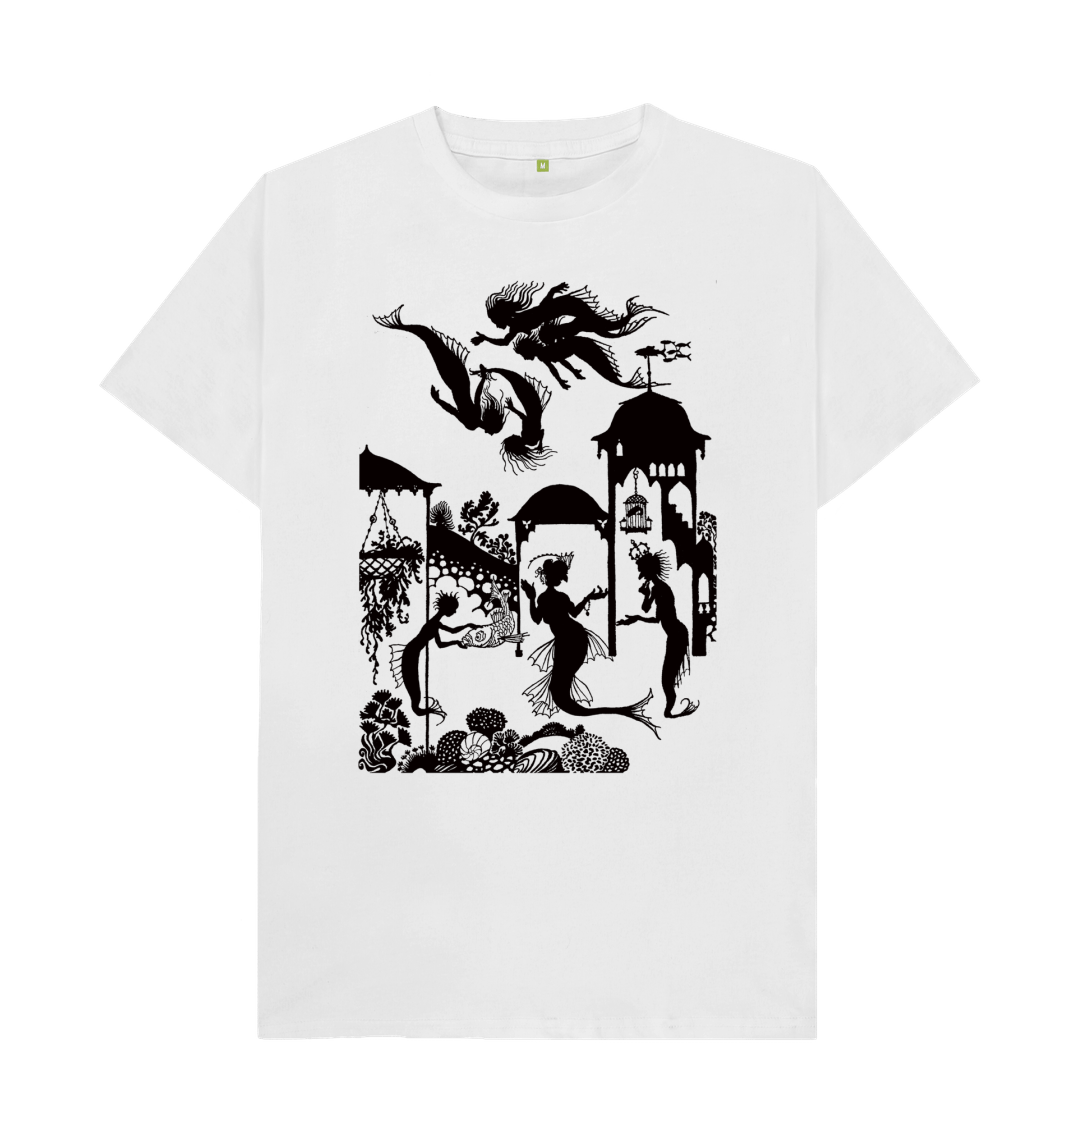 White Little Mermaid in black T-shirt